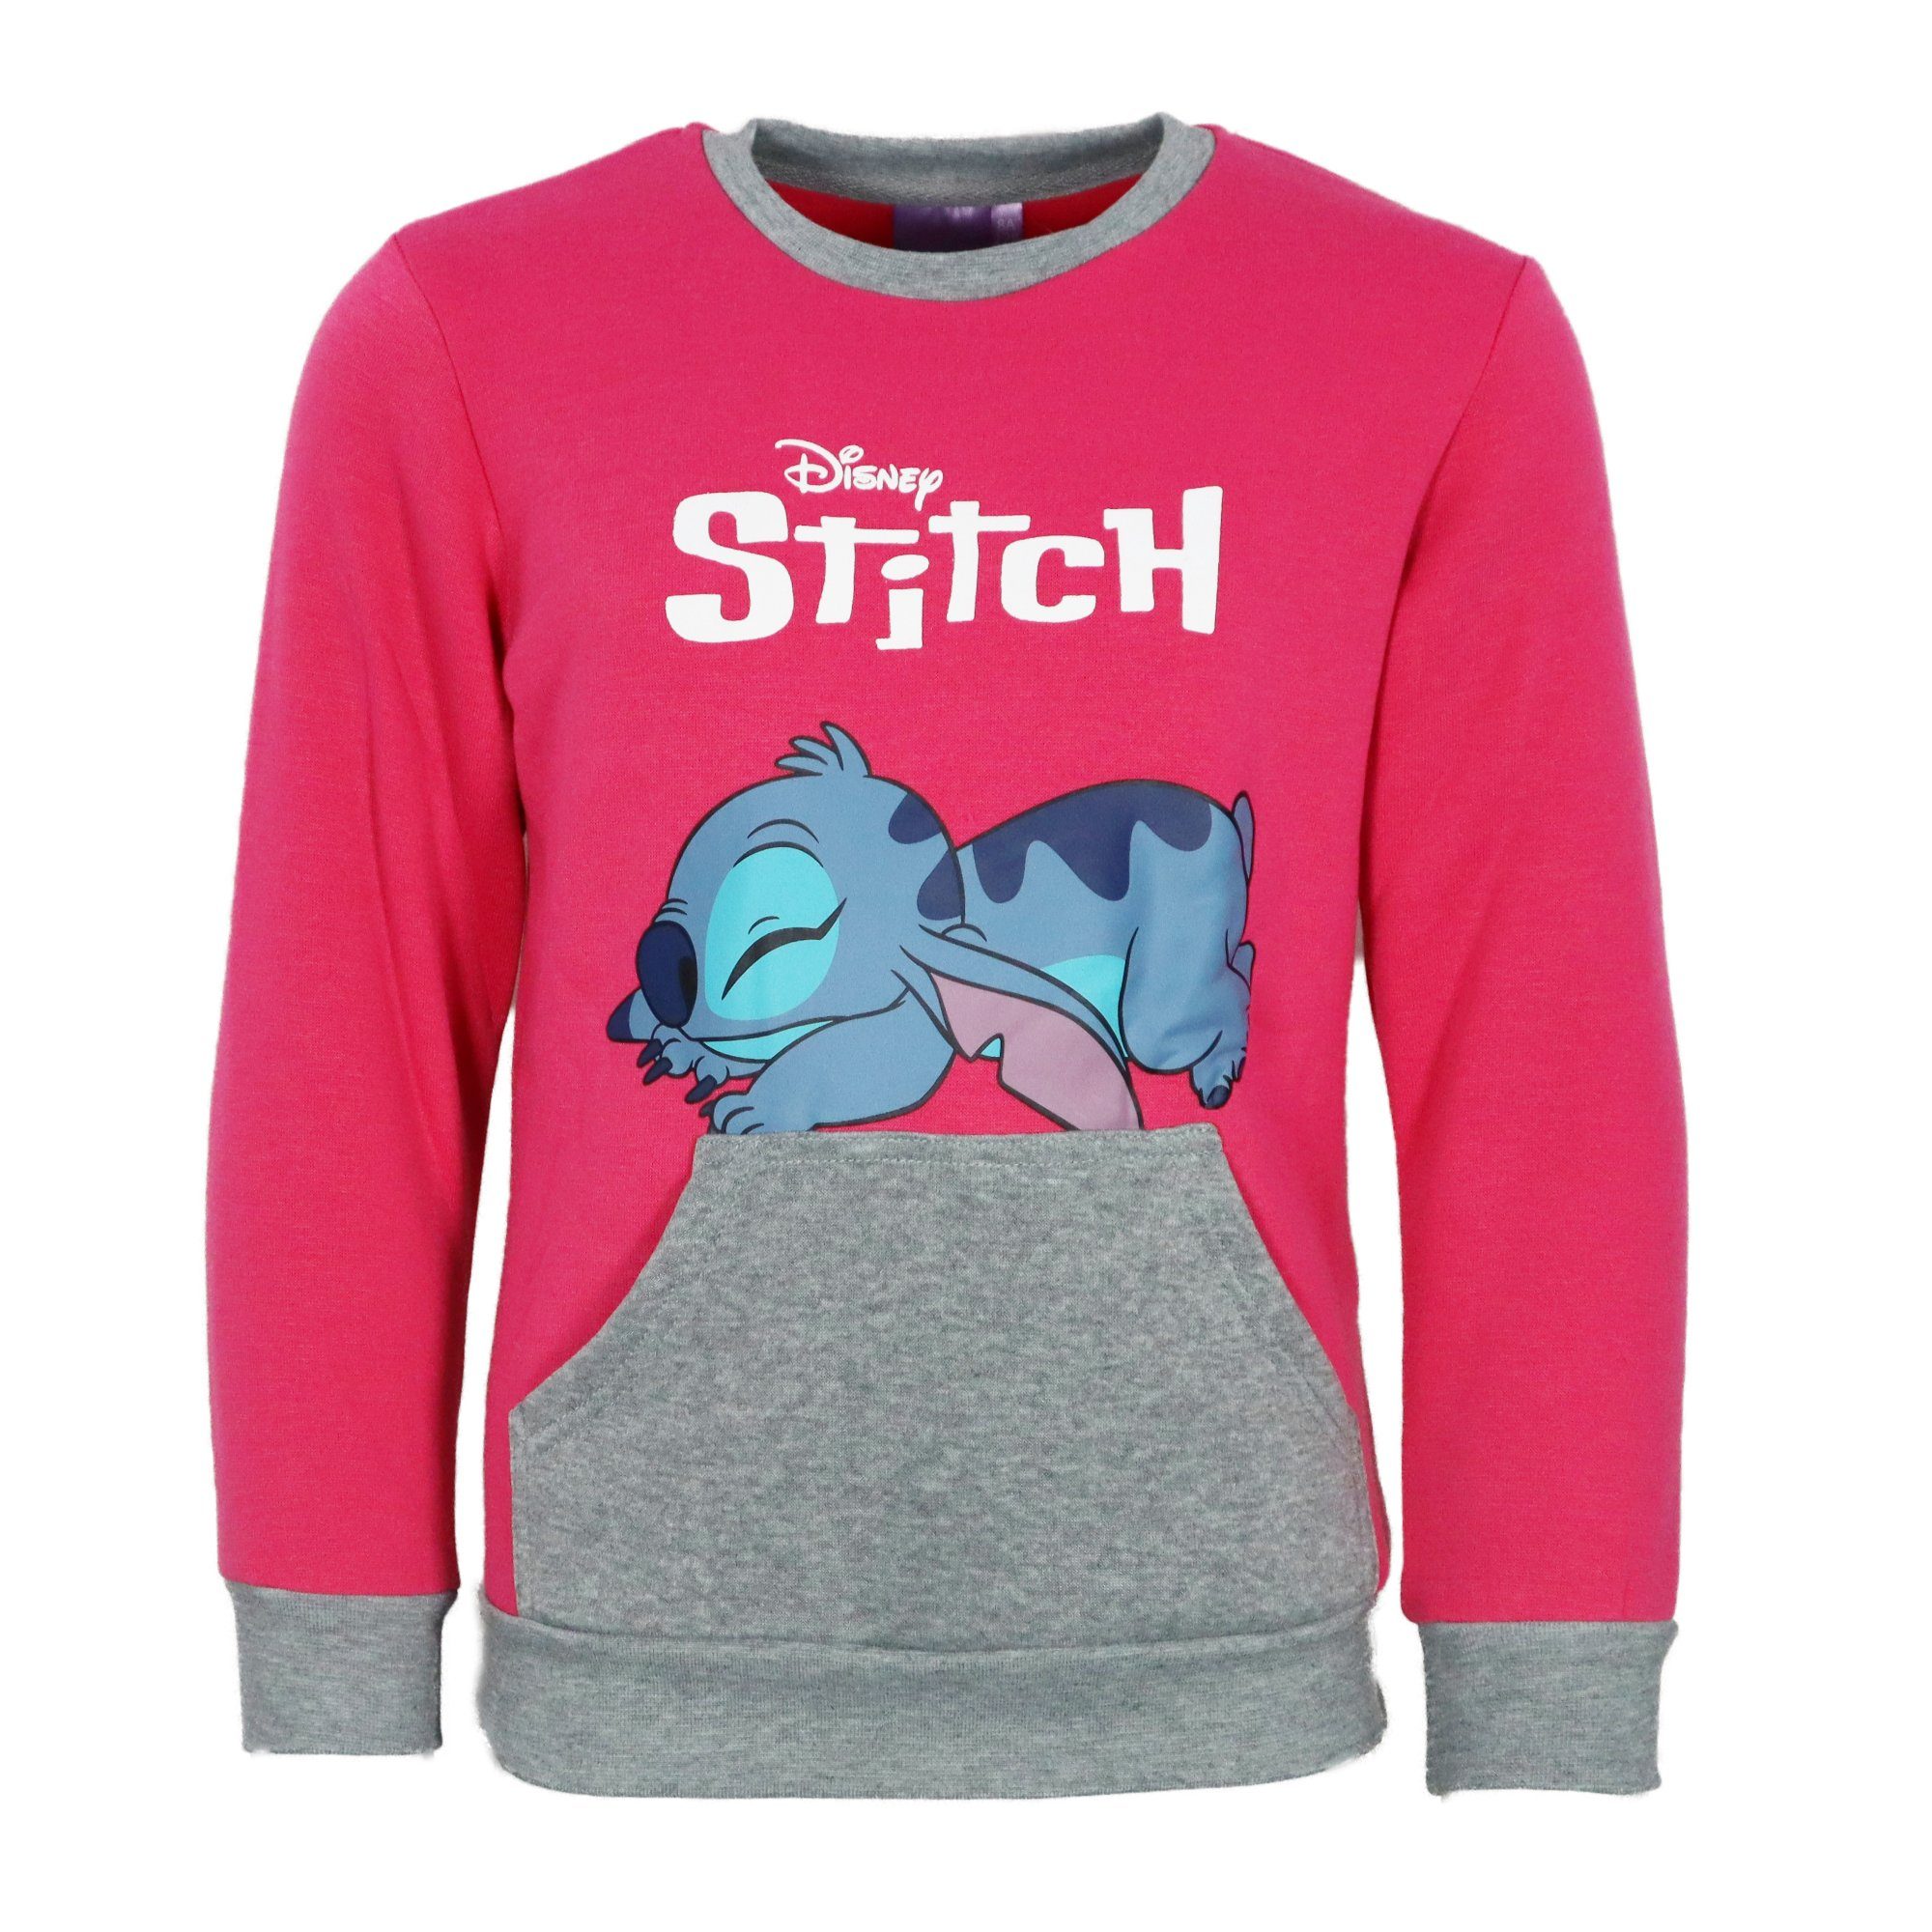 92 Disney Sweater, Fleece Stitch Jogginganzug Joggingset Kinder bis 128 Disney Pink Hose Gr.